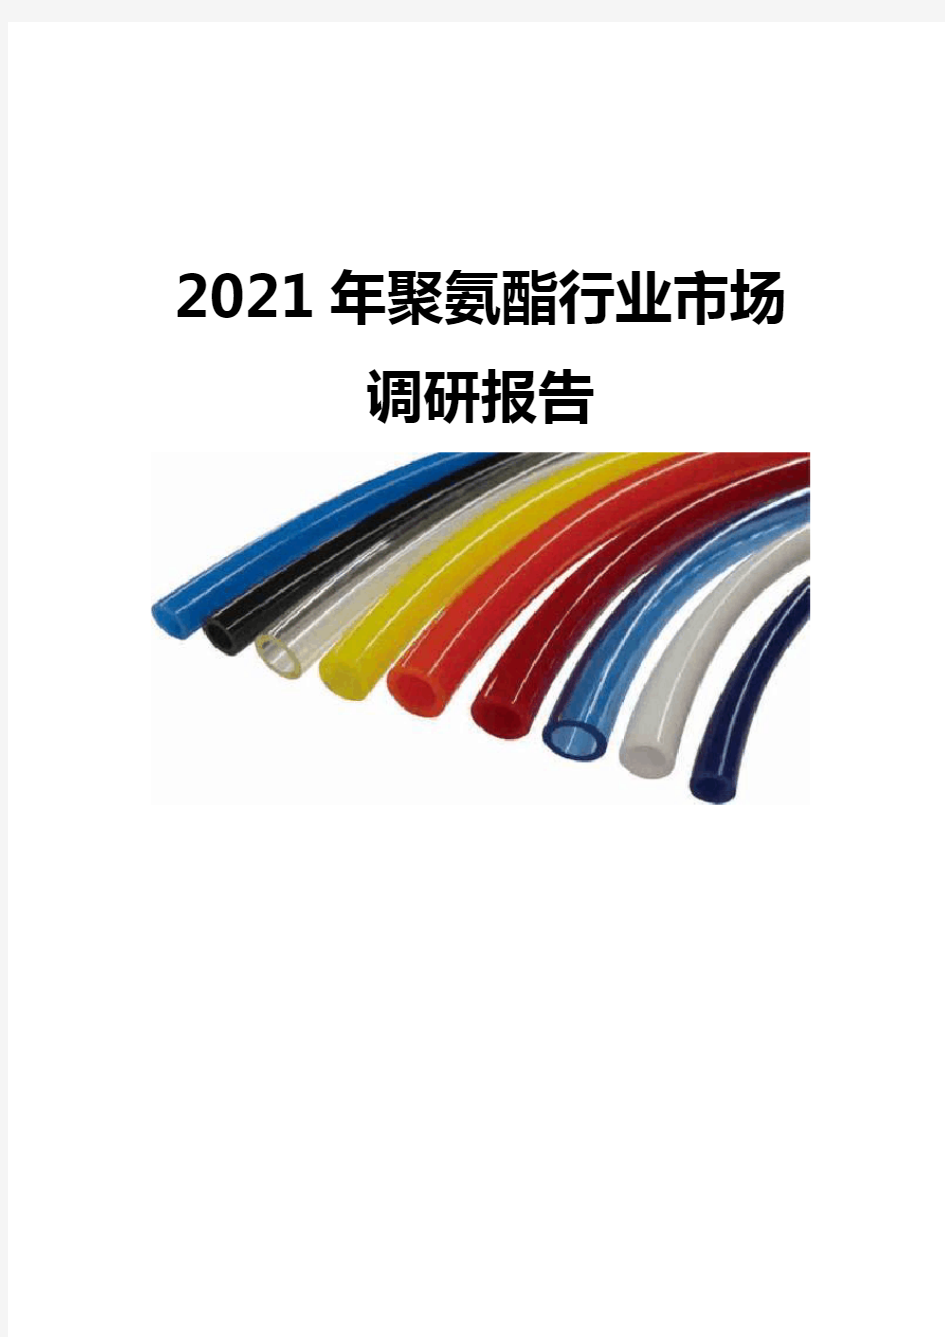 2021聚氨酯行业市场调研报告